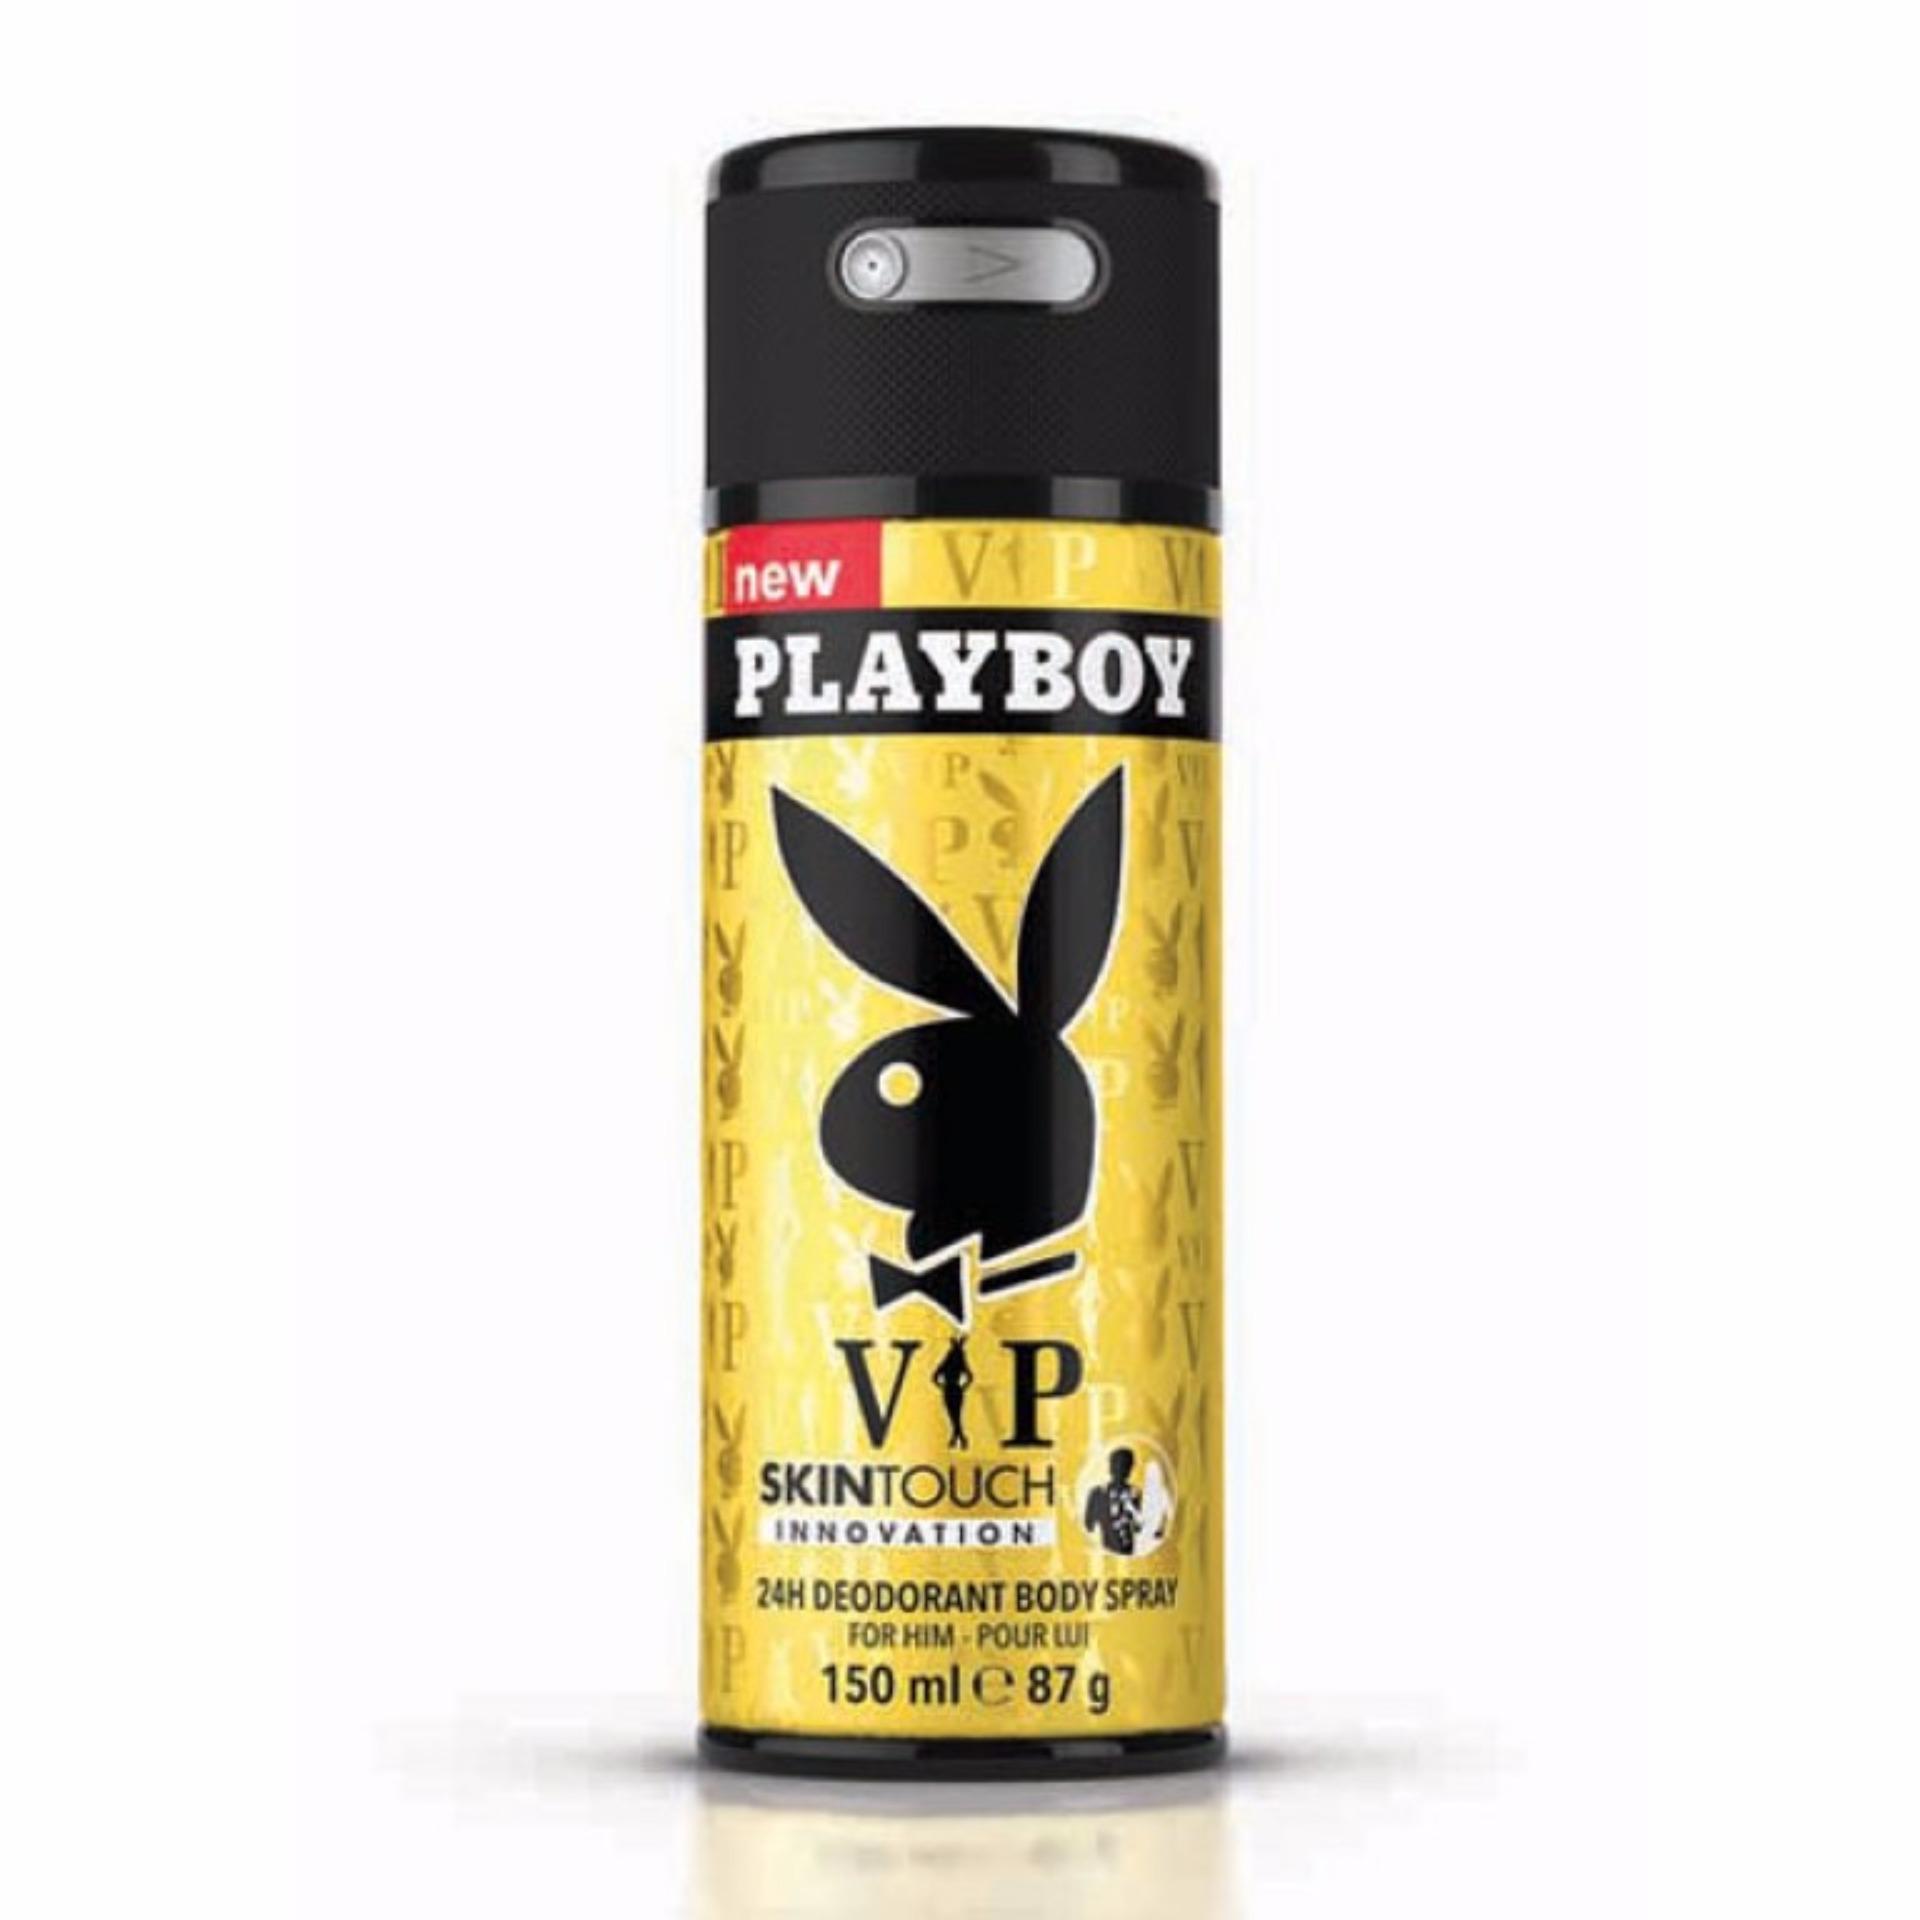 Xịt khử mùi toàn thân dành cho nam Playboy 24h Deadorant Body Spray - Vip 150ml